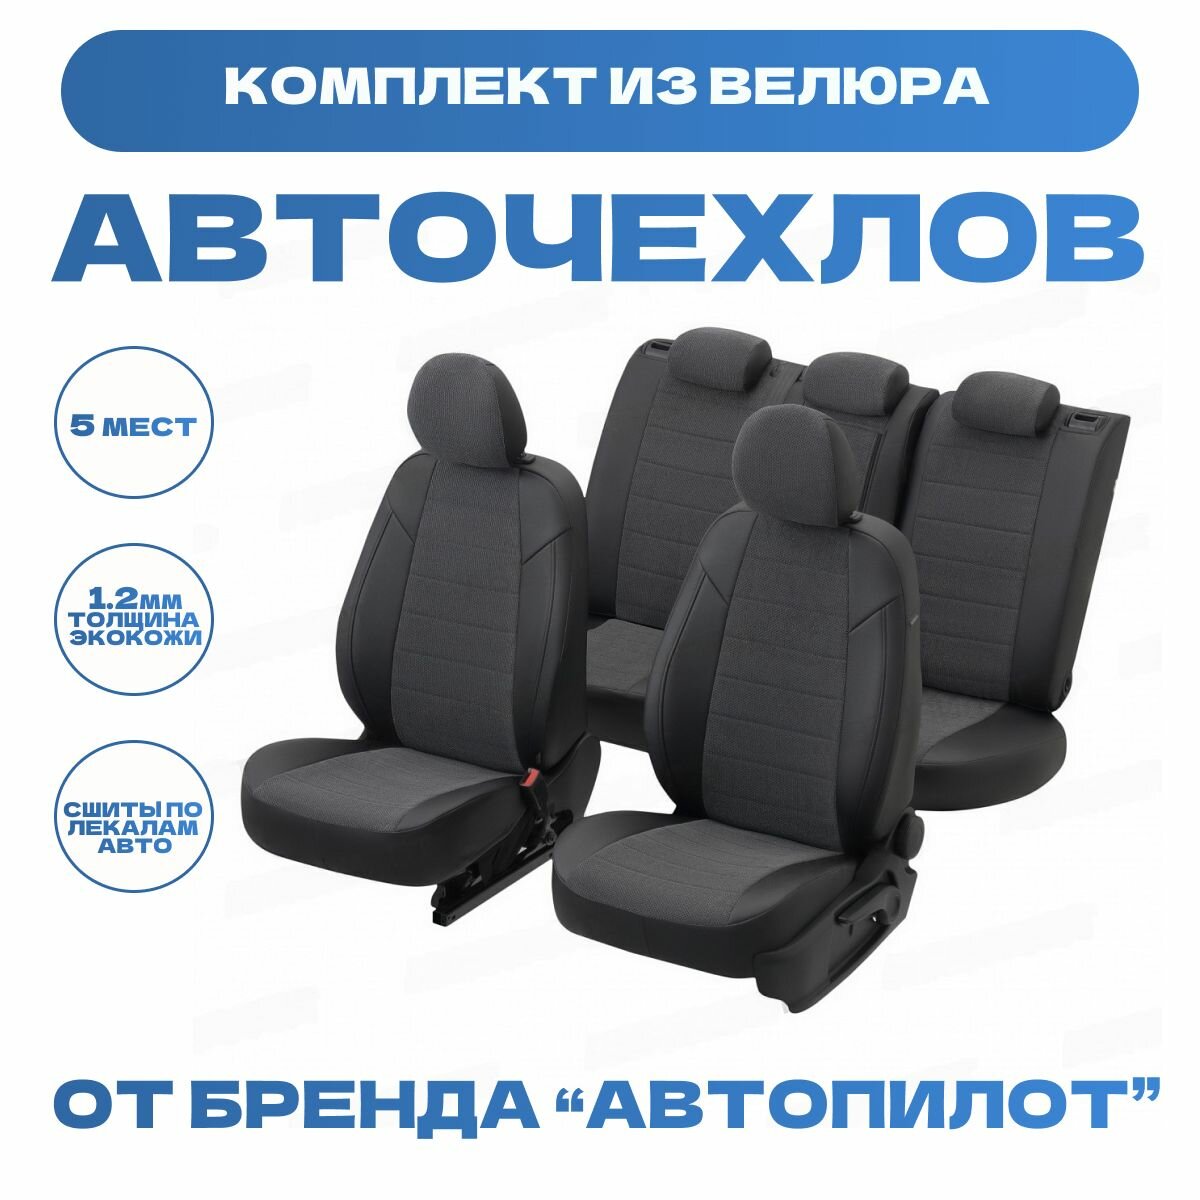 Модельные авточехлы АВТОПИЛОТ для Mitsubishi L200 V (с 2015г) / Fiat Fullback I (c 2016г) велюр, черные